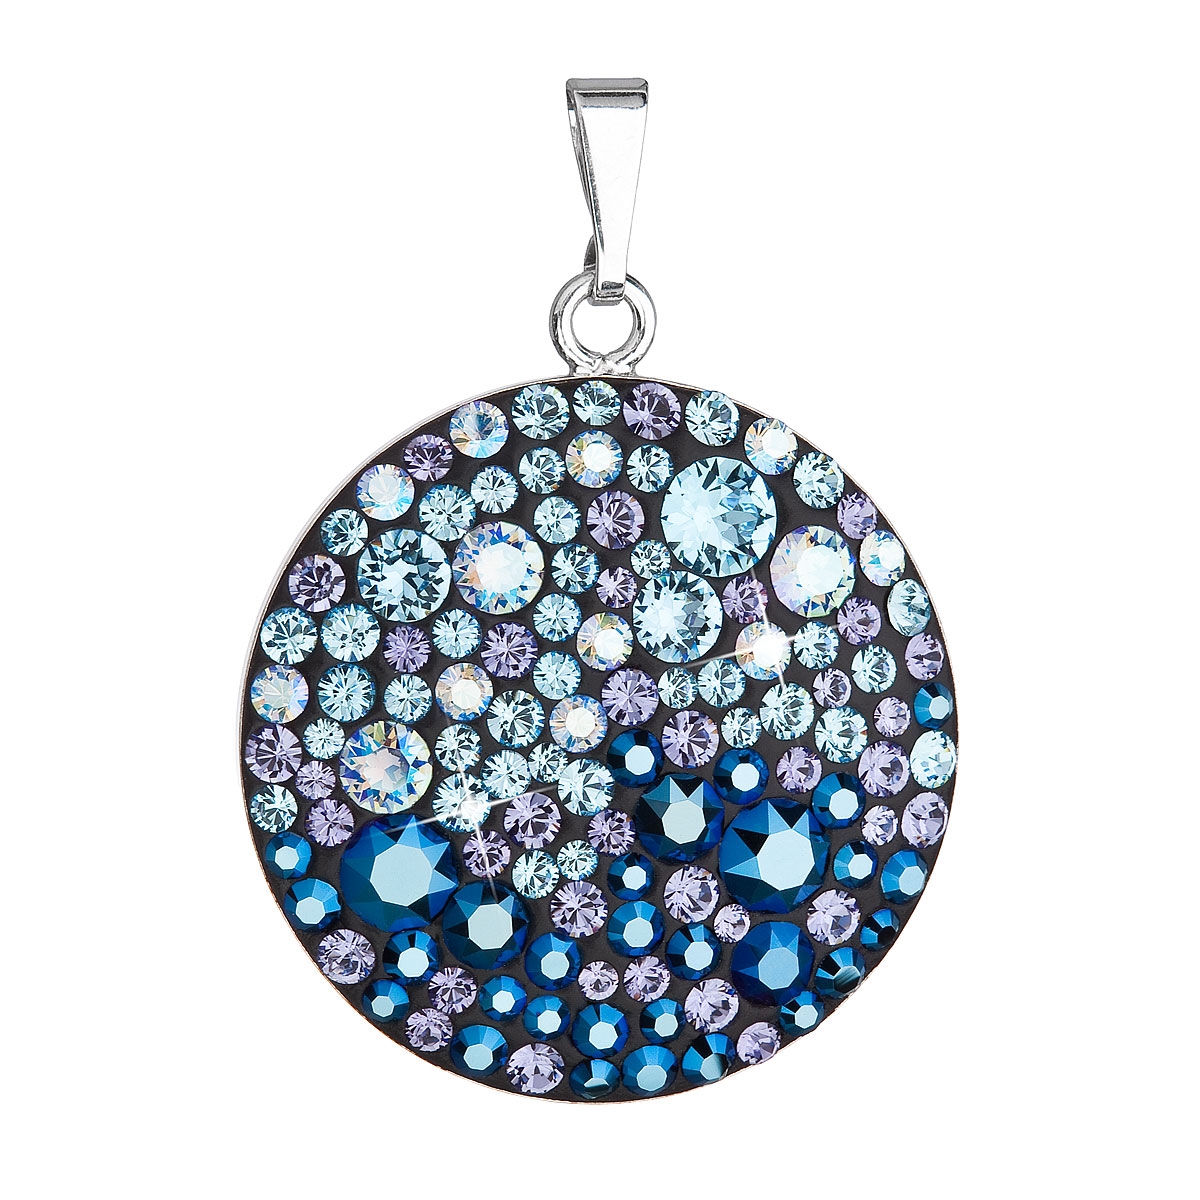 Strieborný prívesok s kryštálmi Crystals from Swarovski ® Blue Style